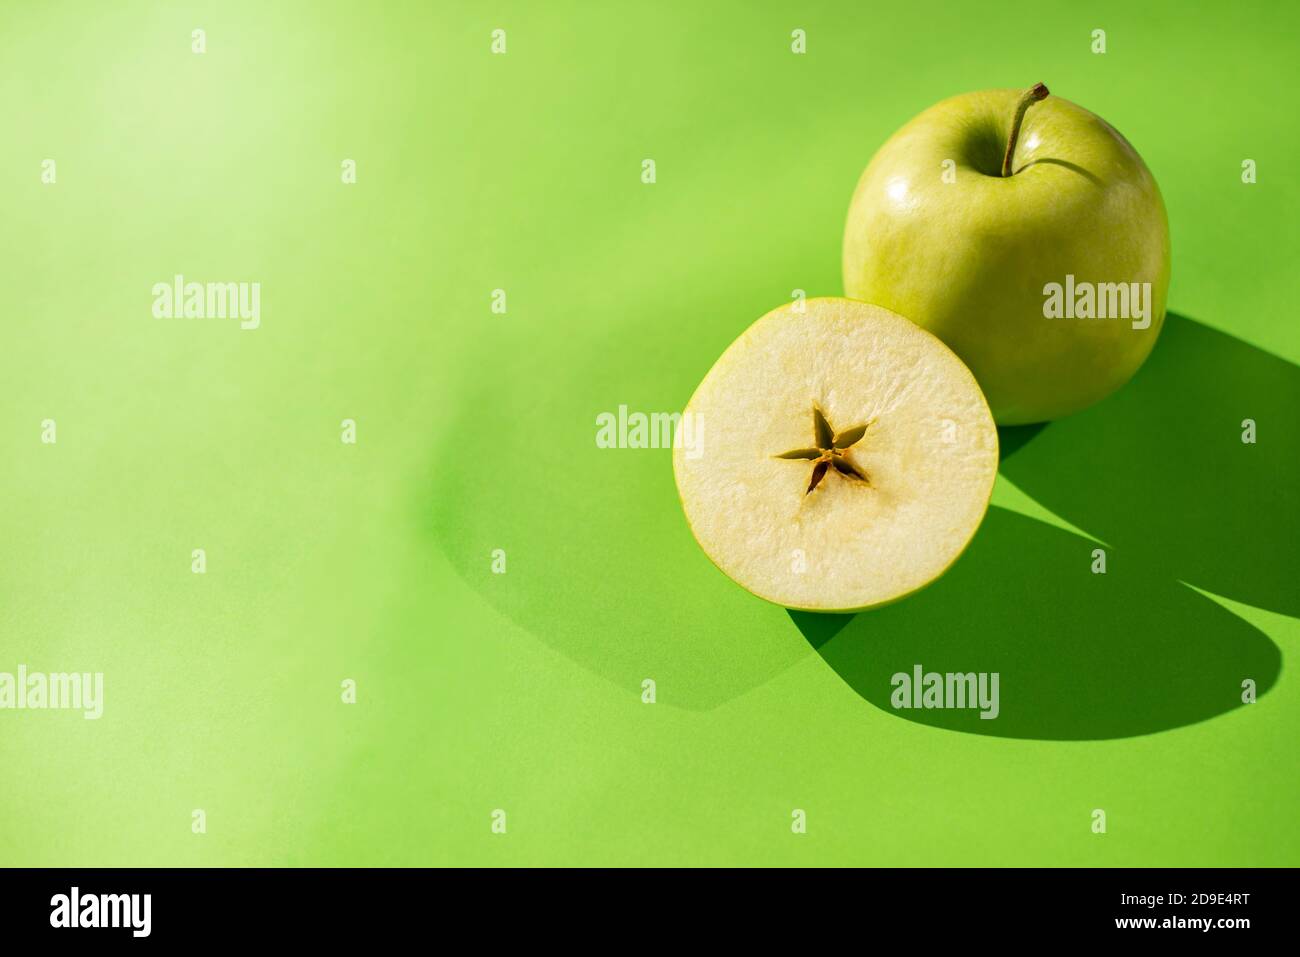 Grüner Apfel ganz und schneiden Sie die Hälfte auf einem grünen Hintergrund. Sternförmiger Apfelkern. Schatten von Äpfeln. Platz für Text kopieren. Stockfoto